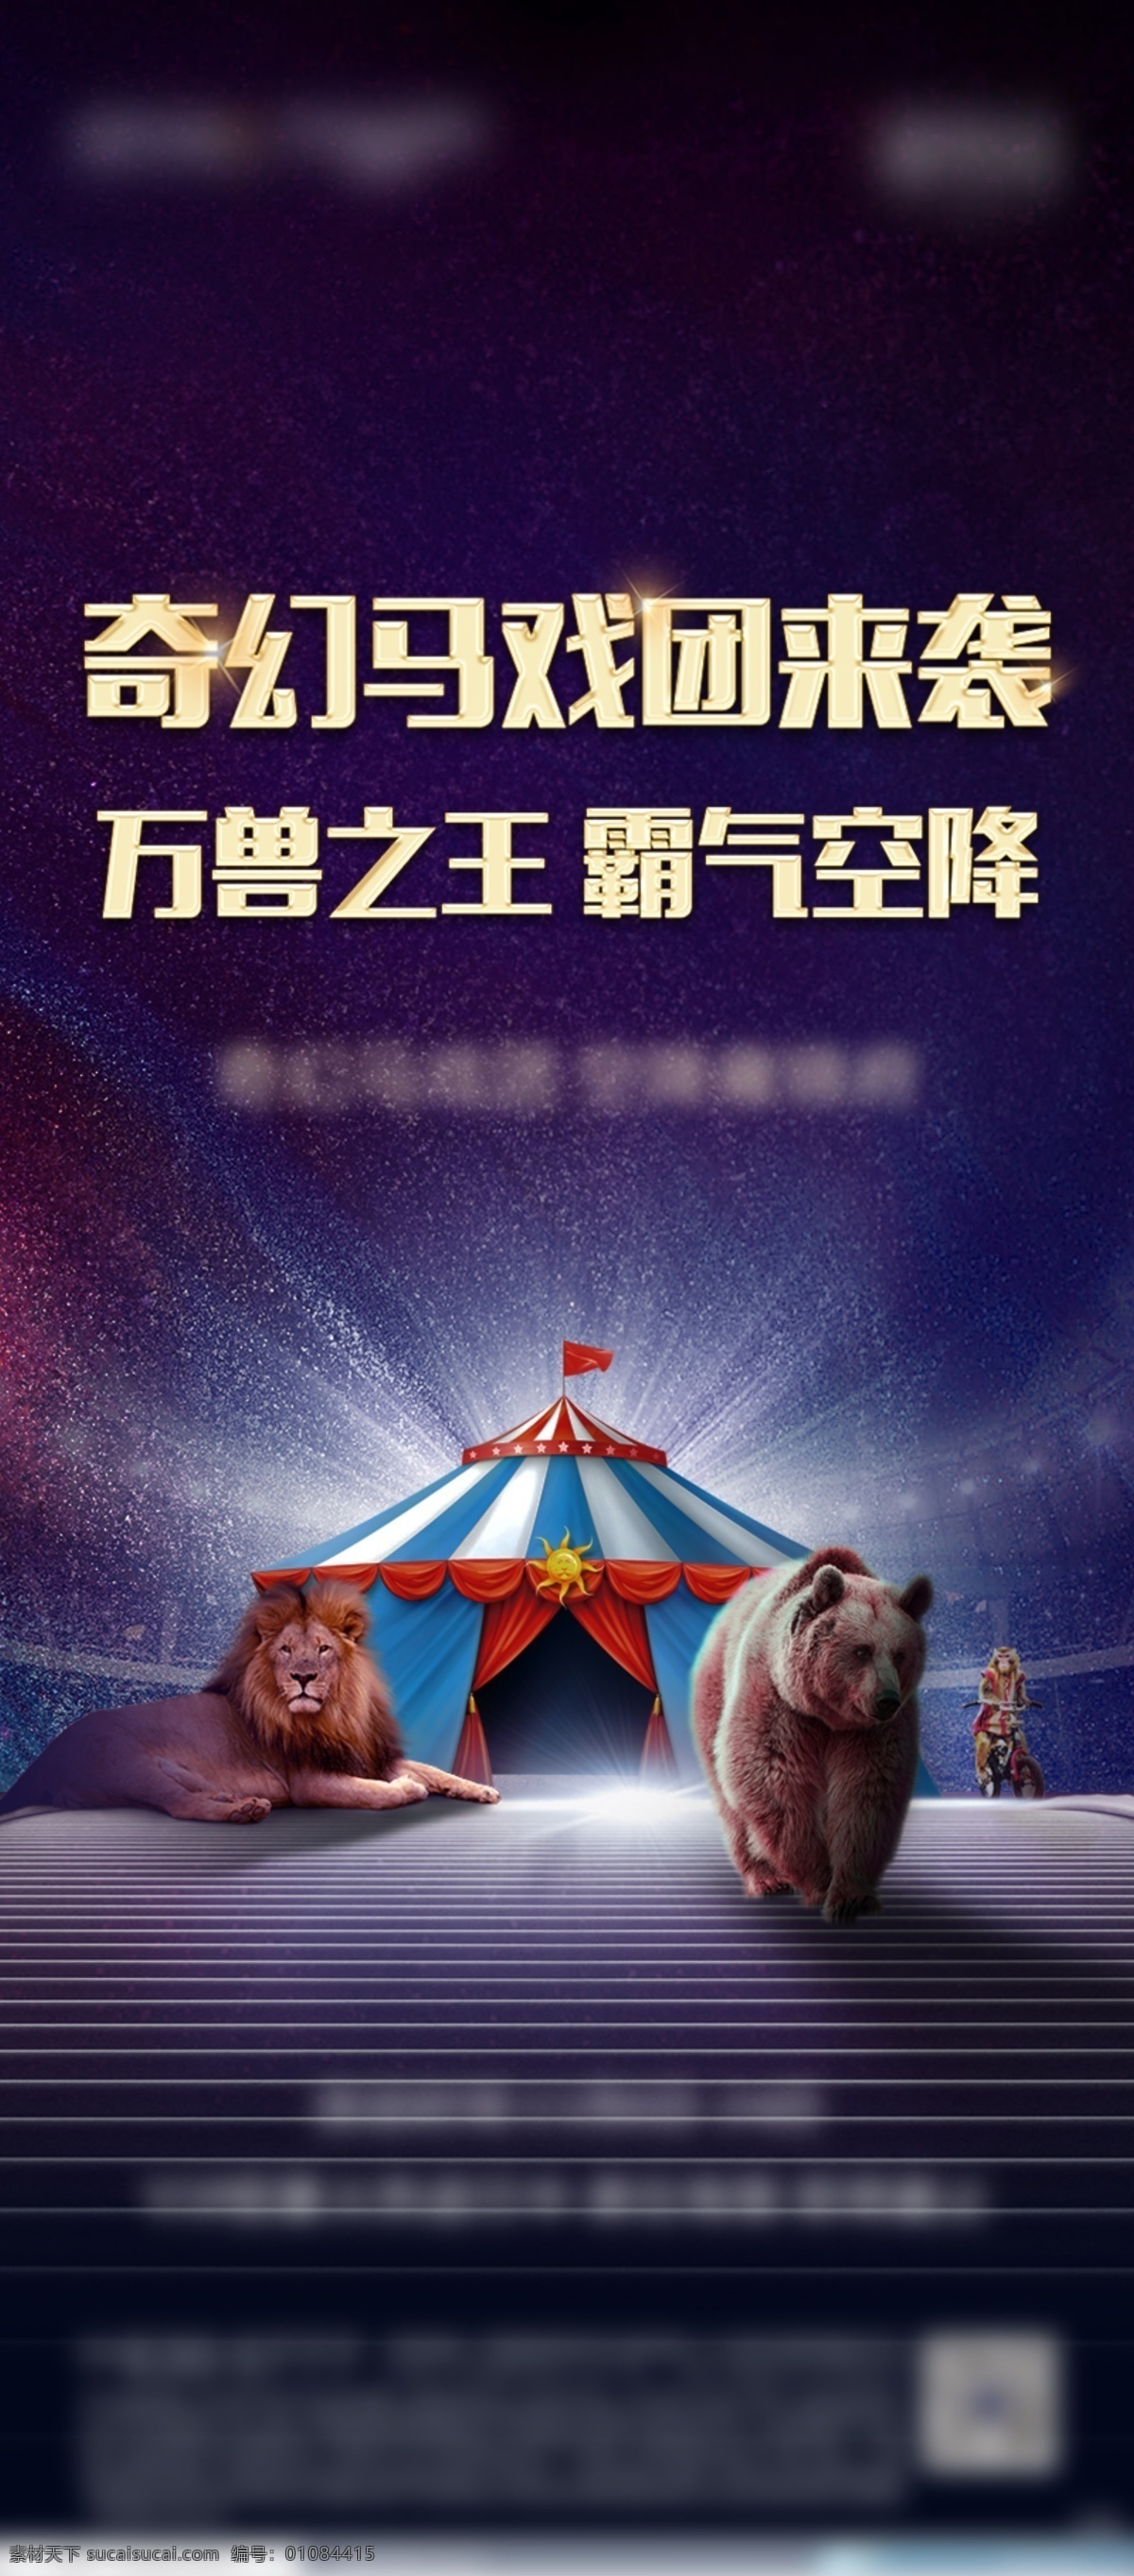 马戏团海报 狮子 狗熊 杂技团 紫色背景 分层